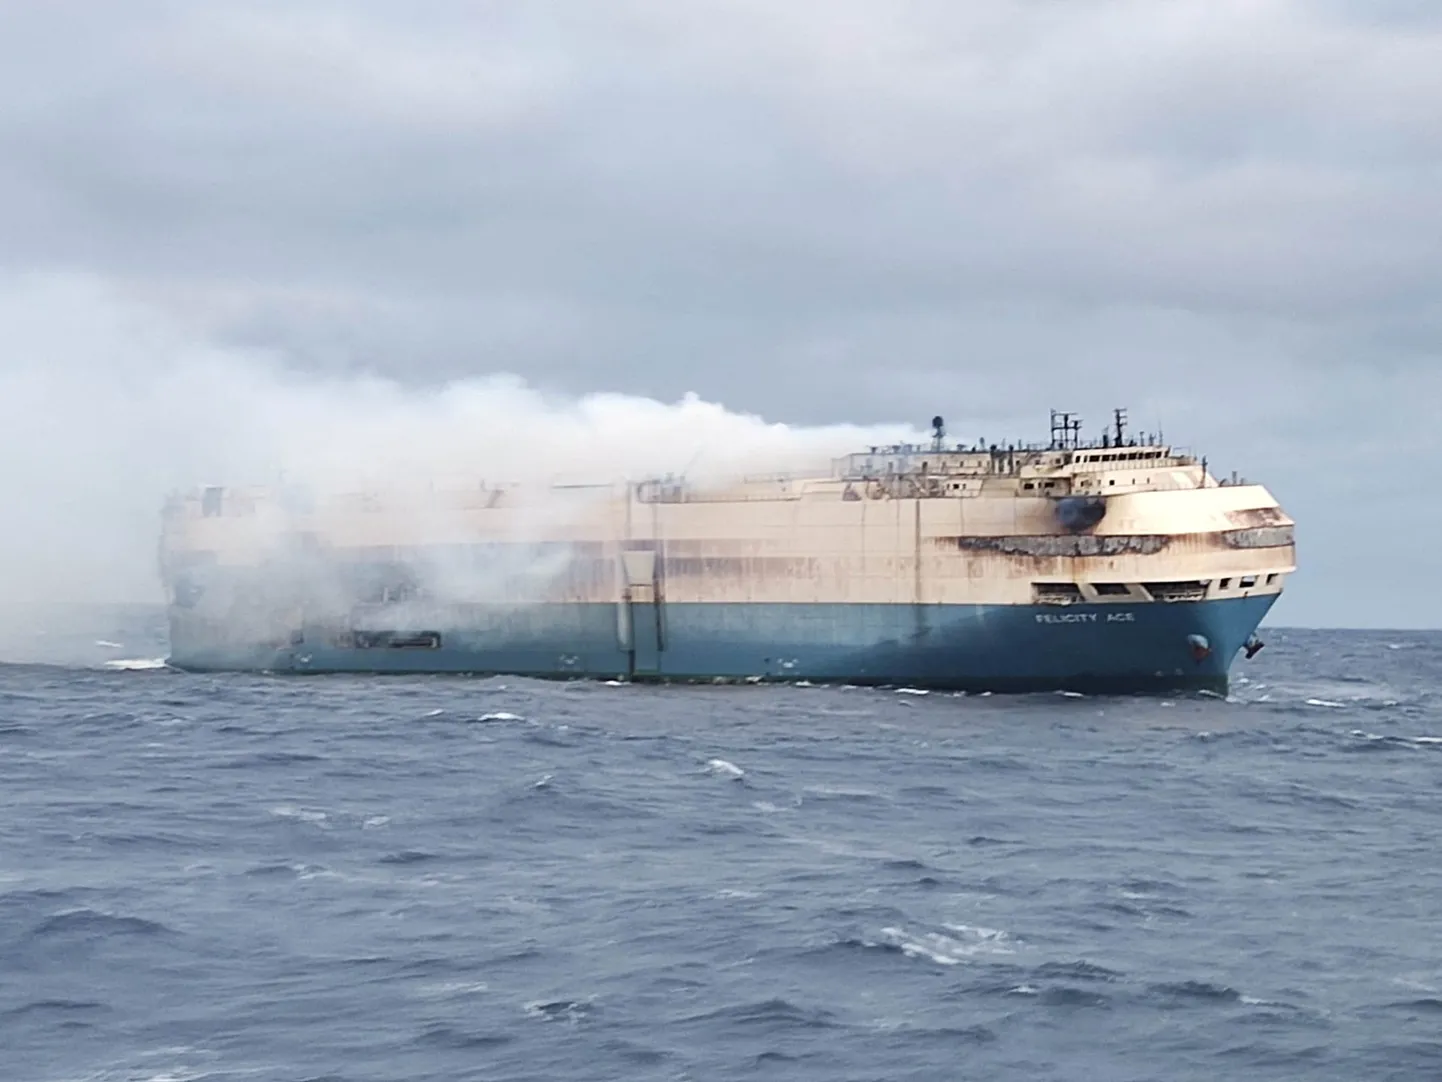 Transpordilaev Felicity Ace põles Atlandi ookeanil ligi kaks nädalat. Kui kahjutuli lõpuks summutada õnnestus ning päästjad laeva pukseerima asus, ei pidanud laevakere enam vastu ning laev uppus 1. märtsil.